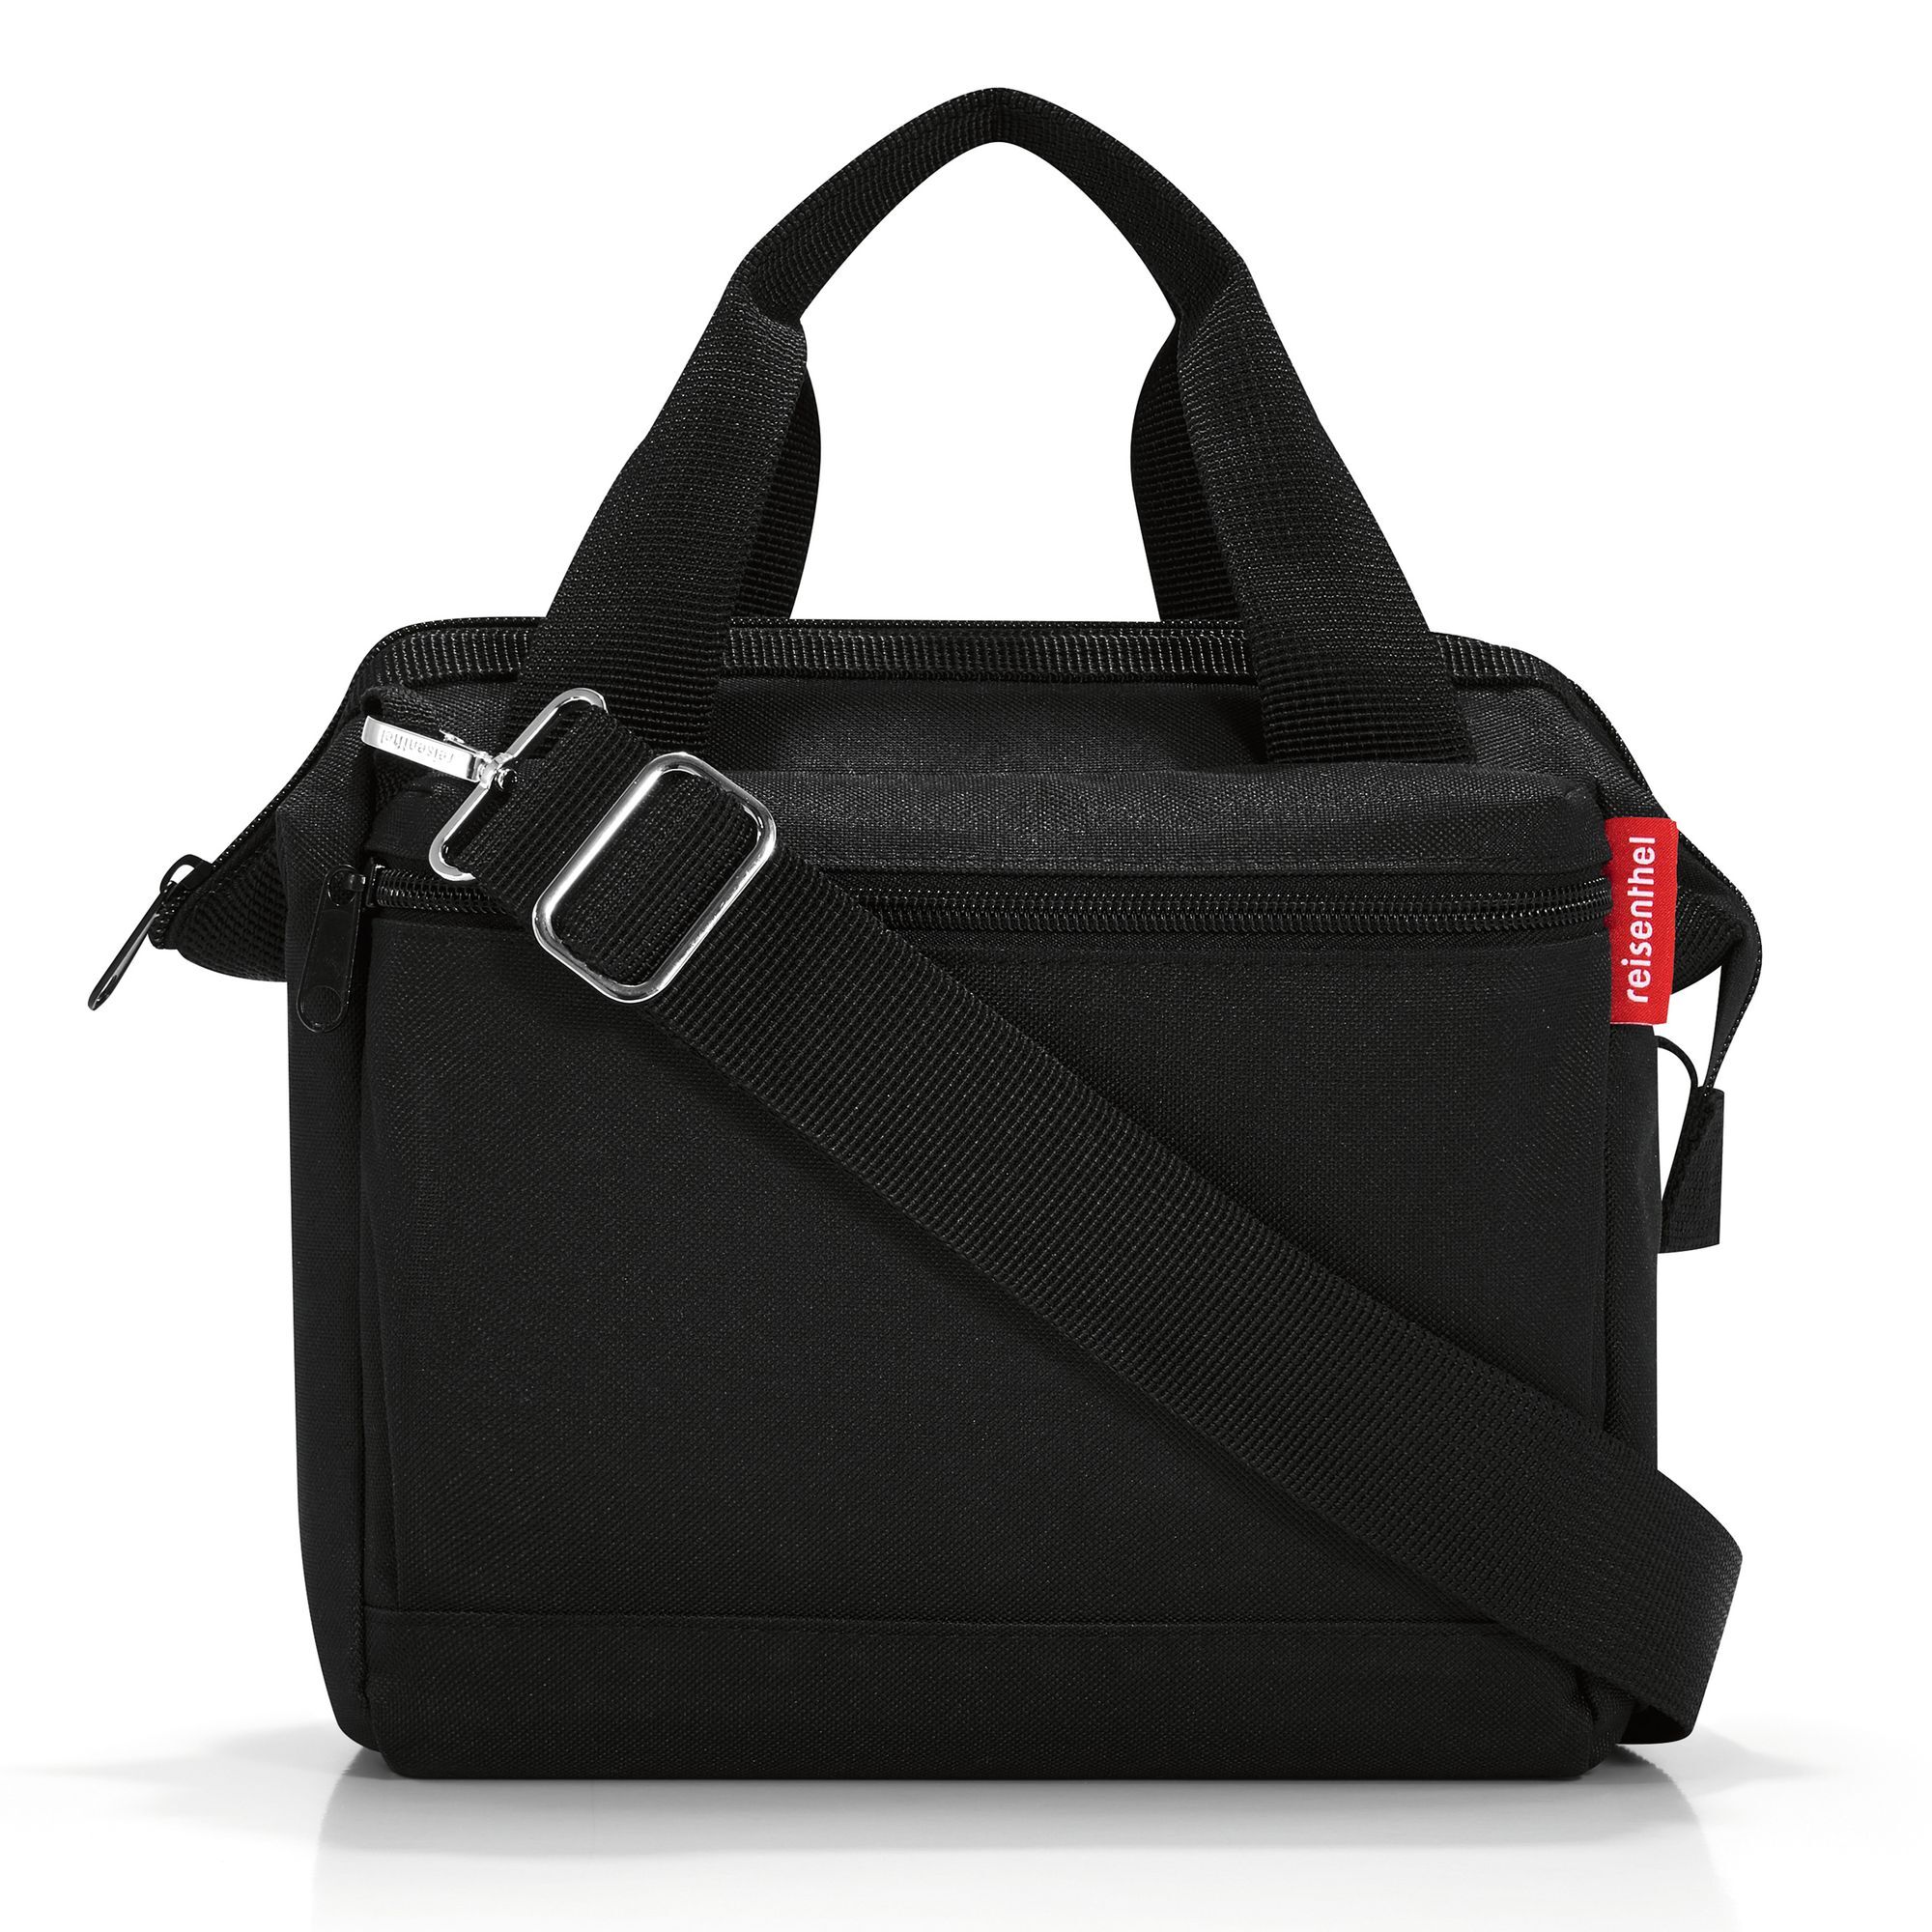 Сумка Reisenthel Allrounder Handtasche 22 cm, черный сумки для мамы reisenthel сумка allrounder m zebra